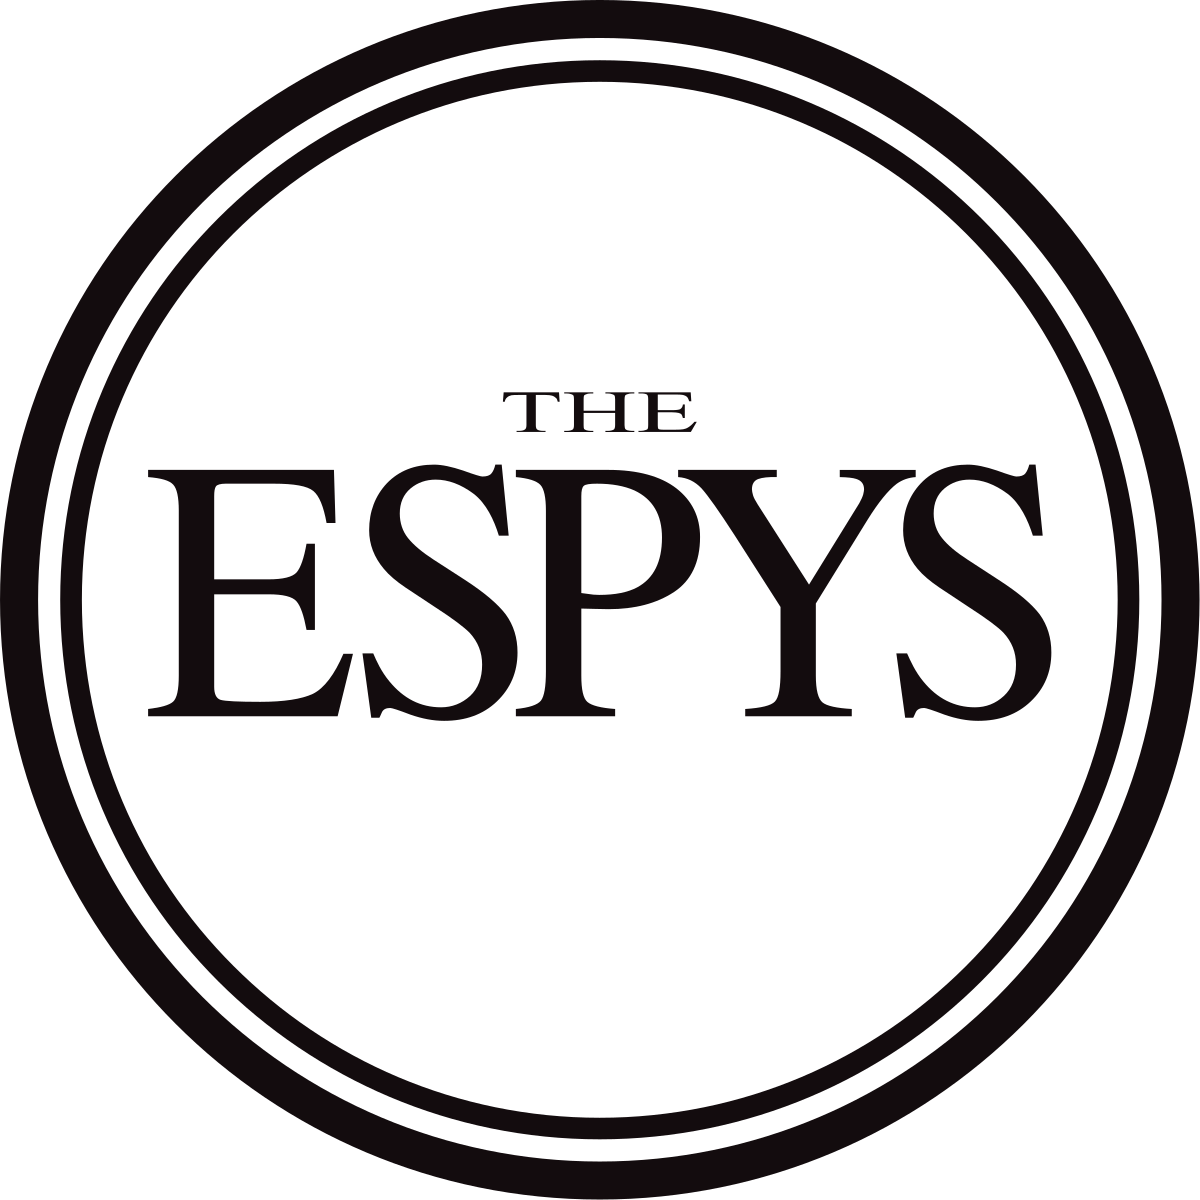 ESPY Awards – Tuesday, May 17th